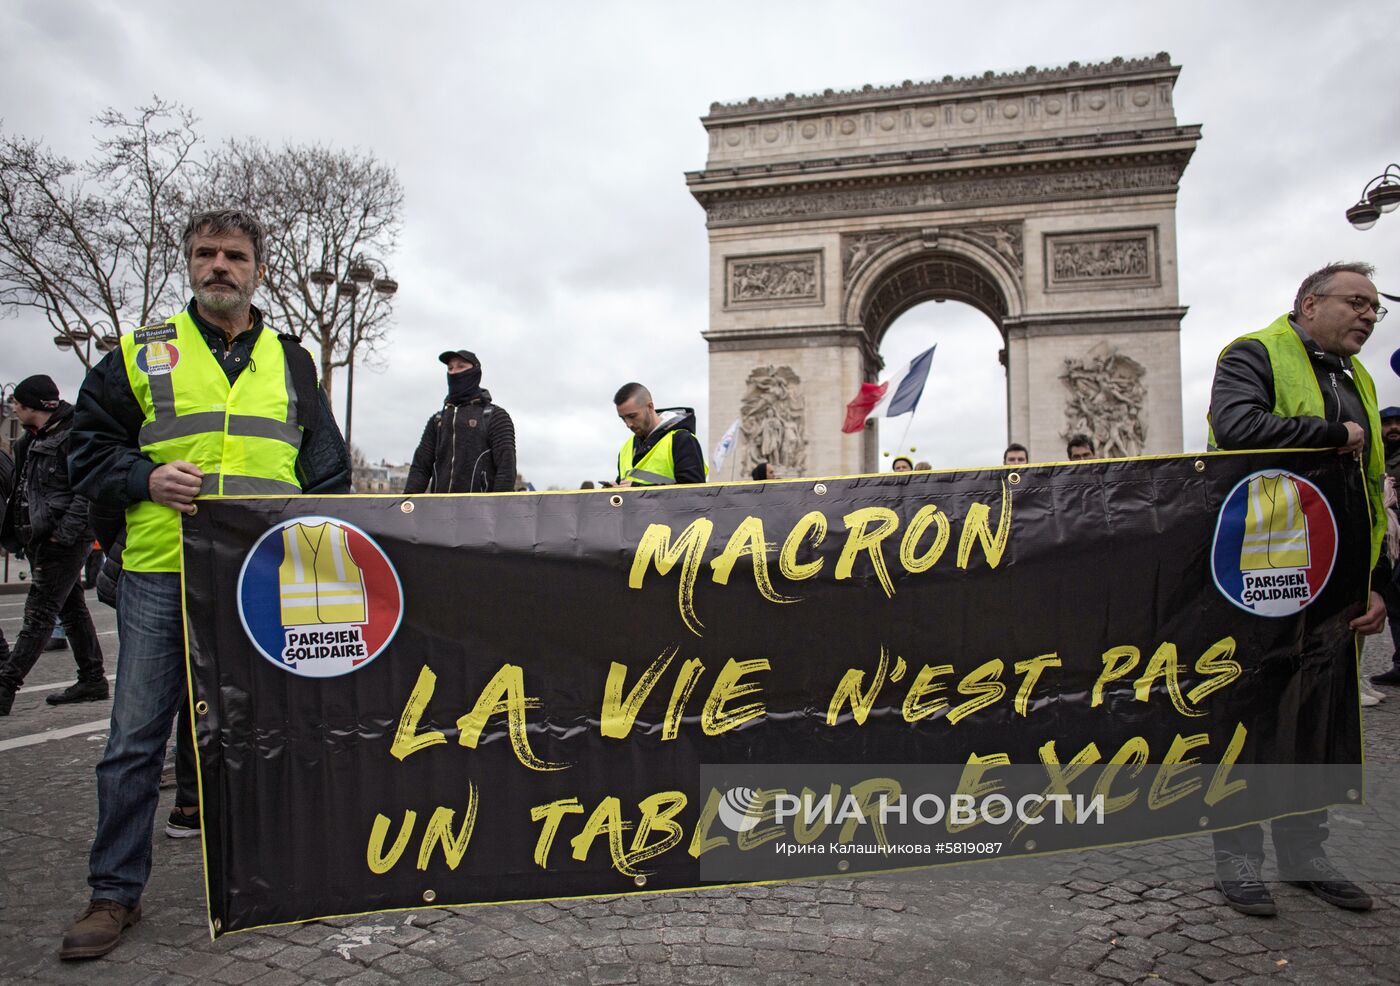 Акция протестов "Желтые жилеты" в Париже